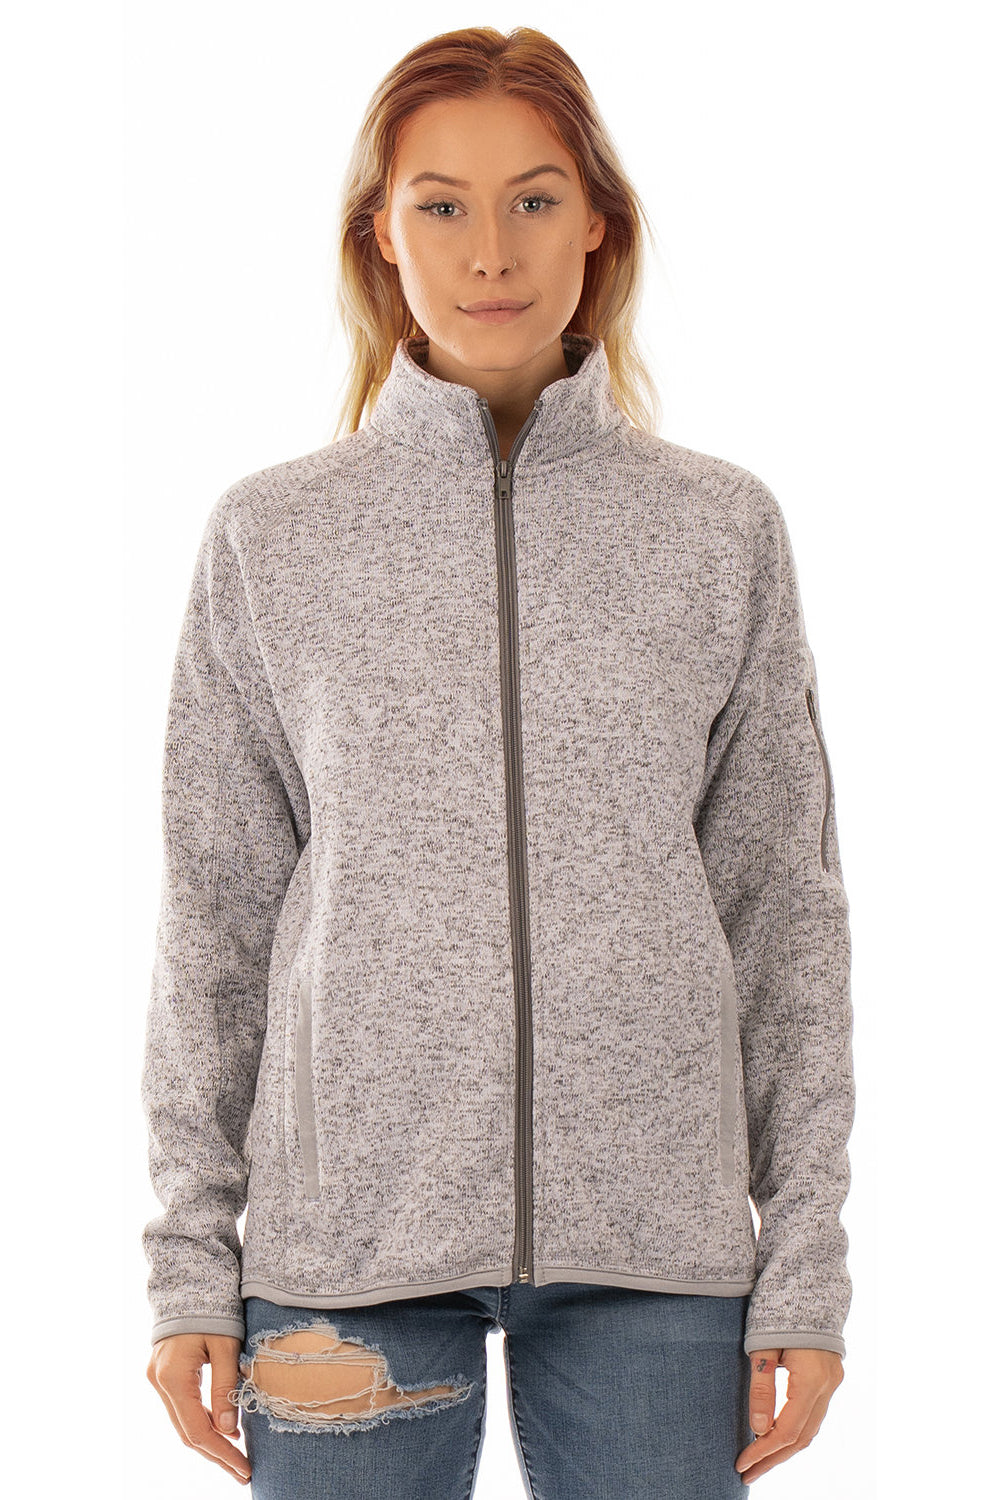 Burnside 5901 Womens Sweater Knit Full Zip Jacket Heather Grey Model Front